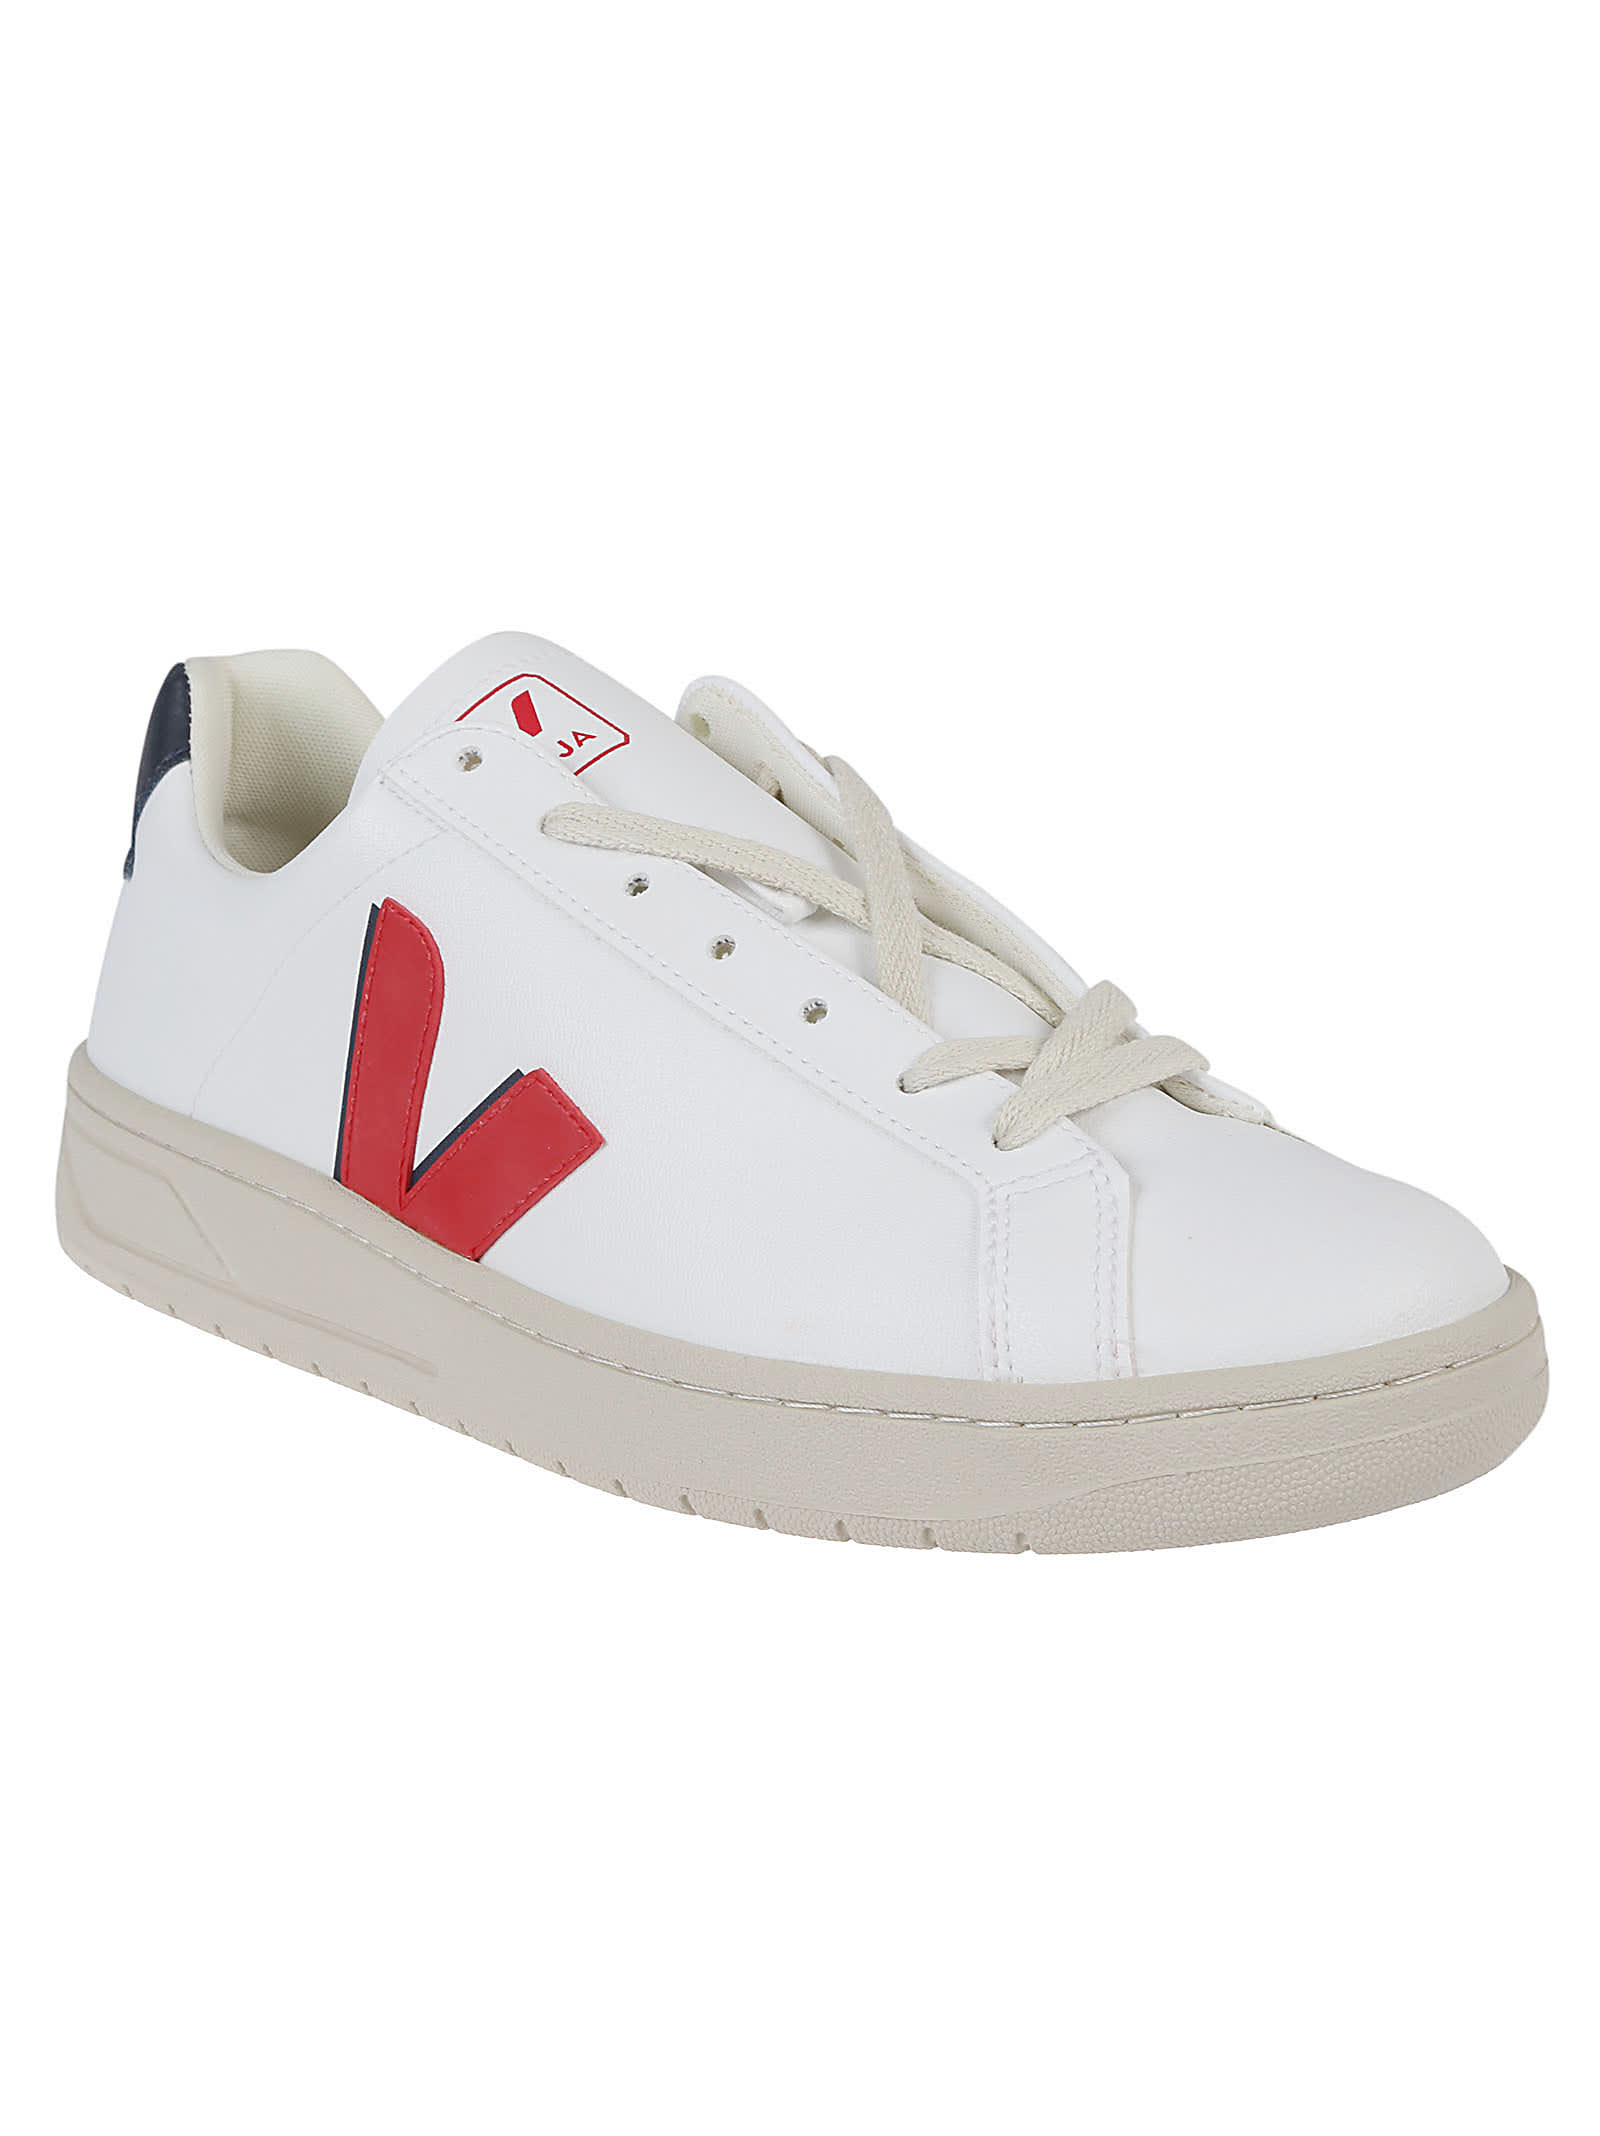 Shop Veja Urca Sneakers In White/pekin/nautico